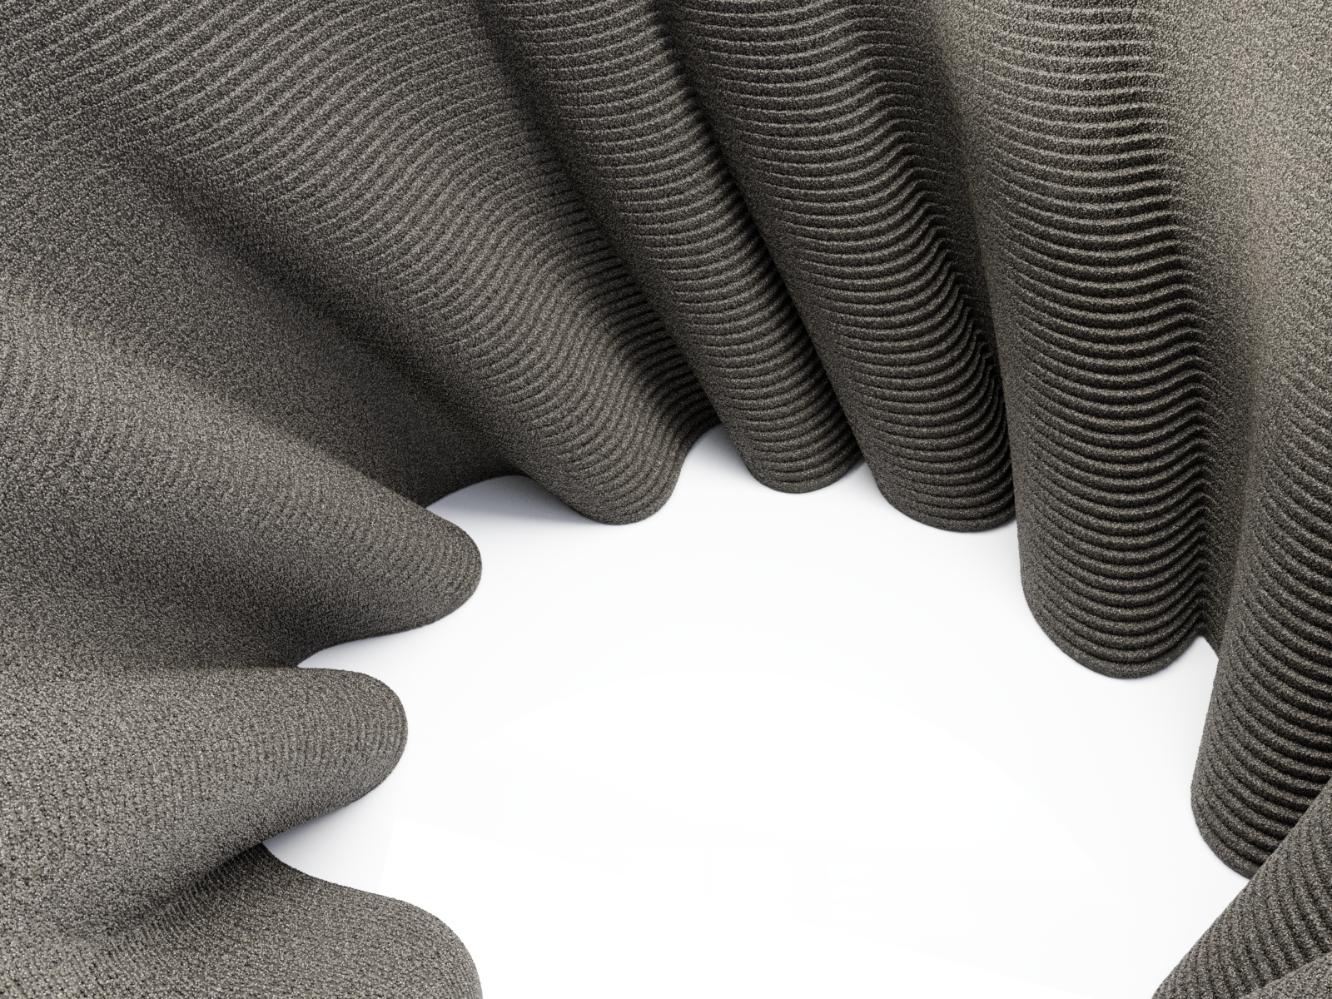 Repoussant les limites du possible, DUNE est une table basse circulaire moderne, imprimée en 3D à partir de sable de quartz noir. Belle, audacieuse et dynamique... une forme permanente émerge d'un monticule composé de millions de particules de